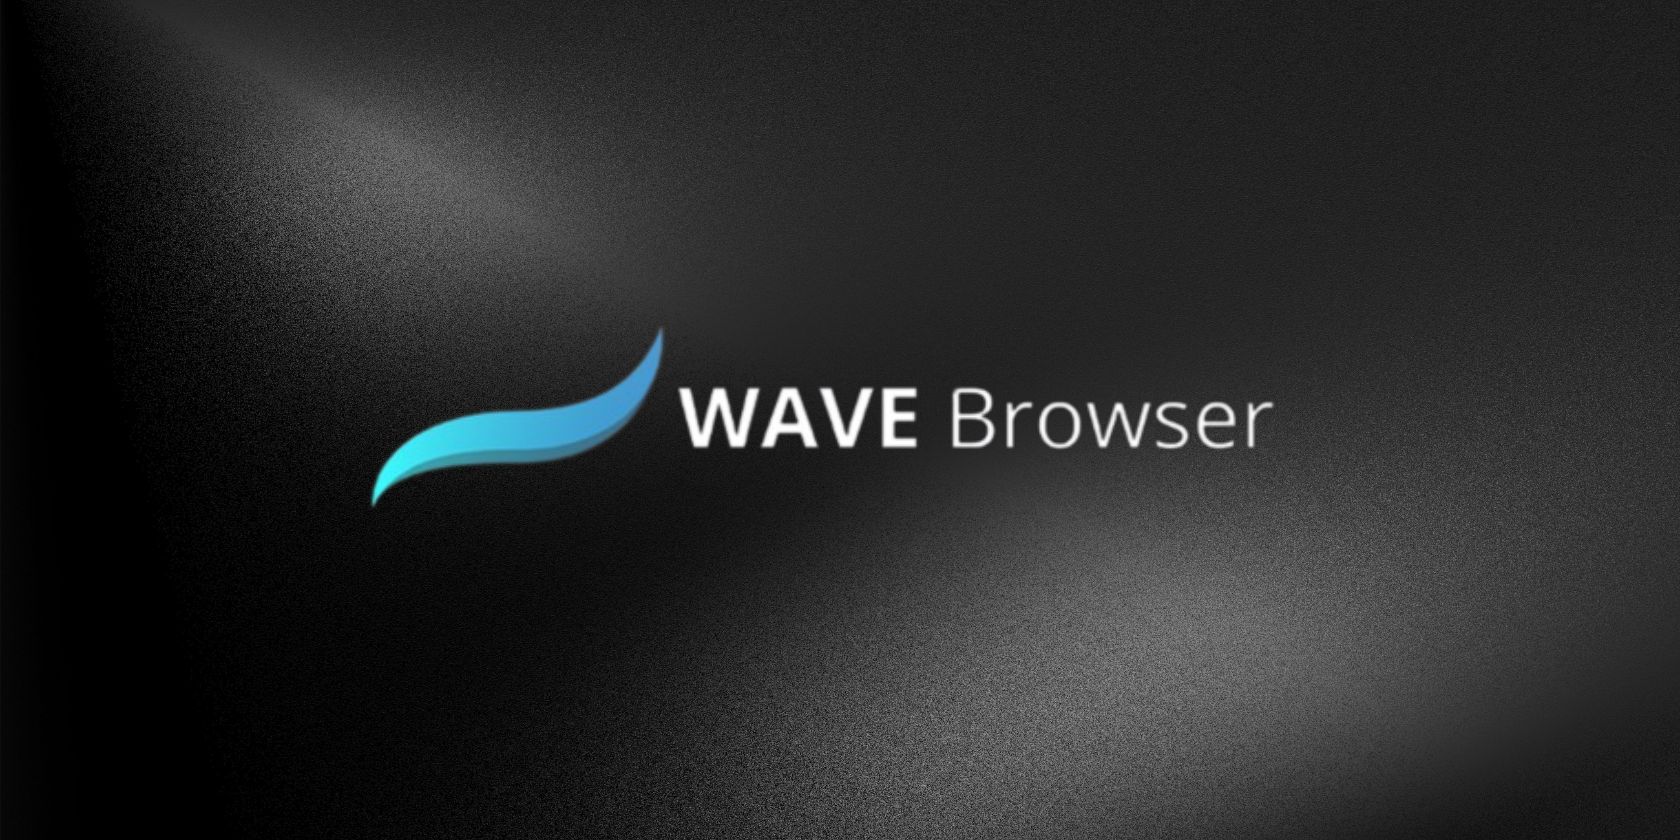 Wave browser logo on black background